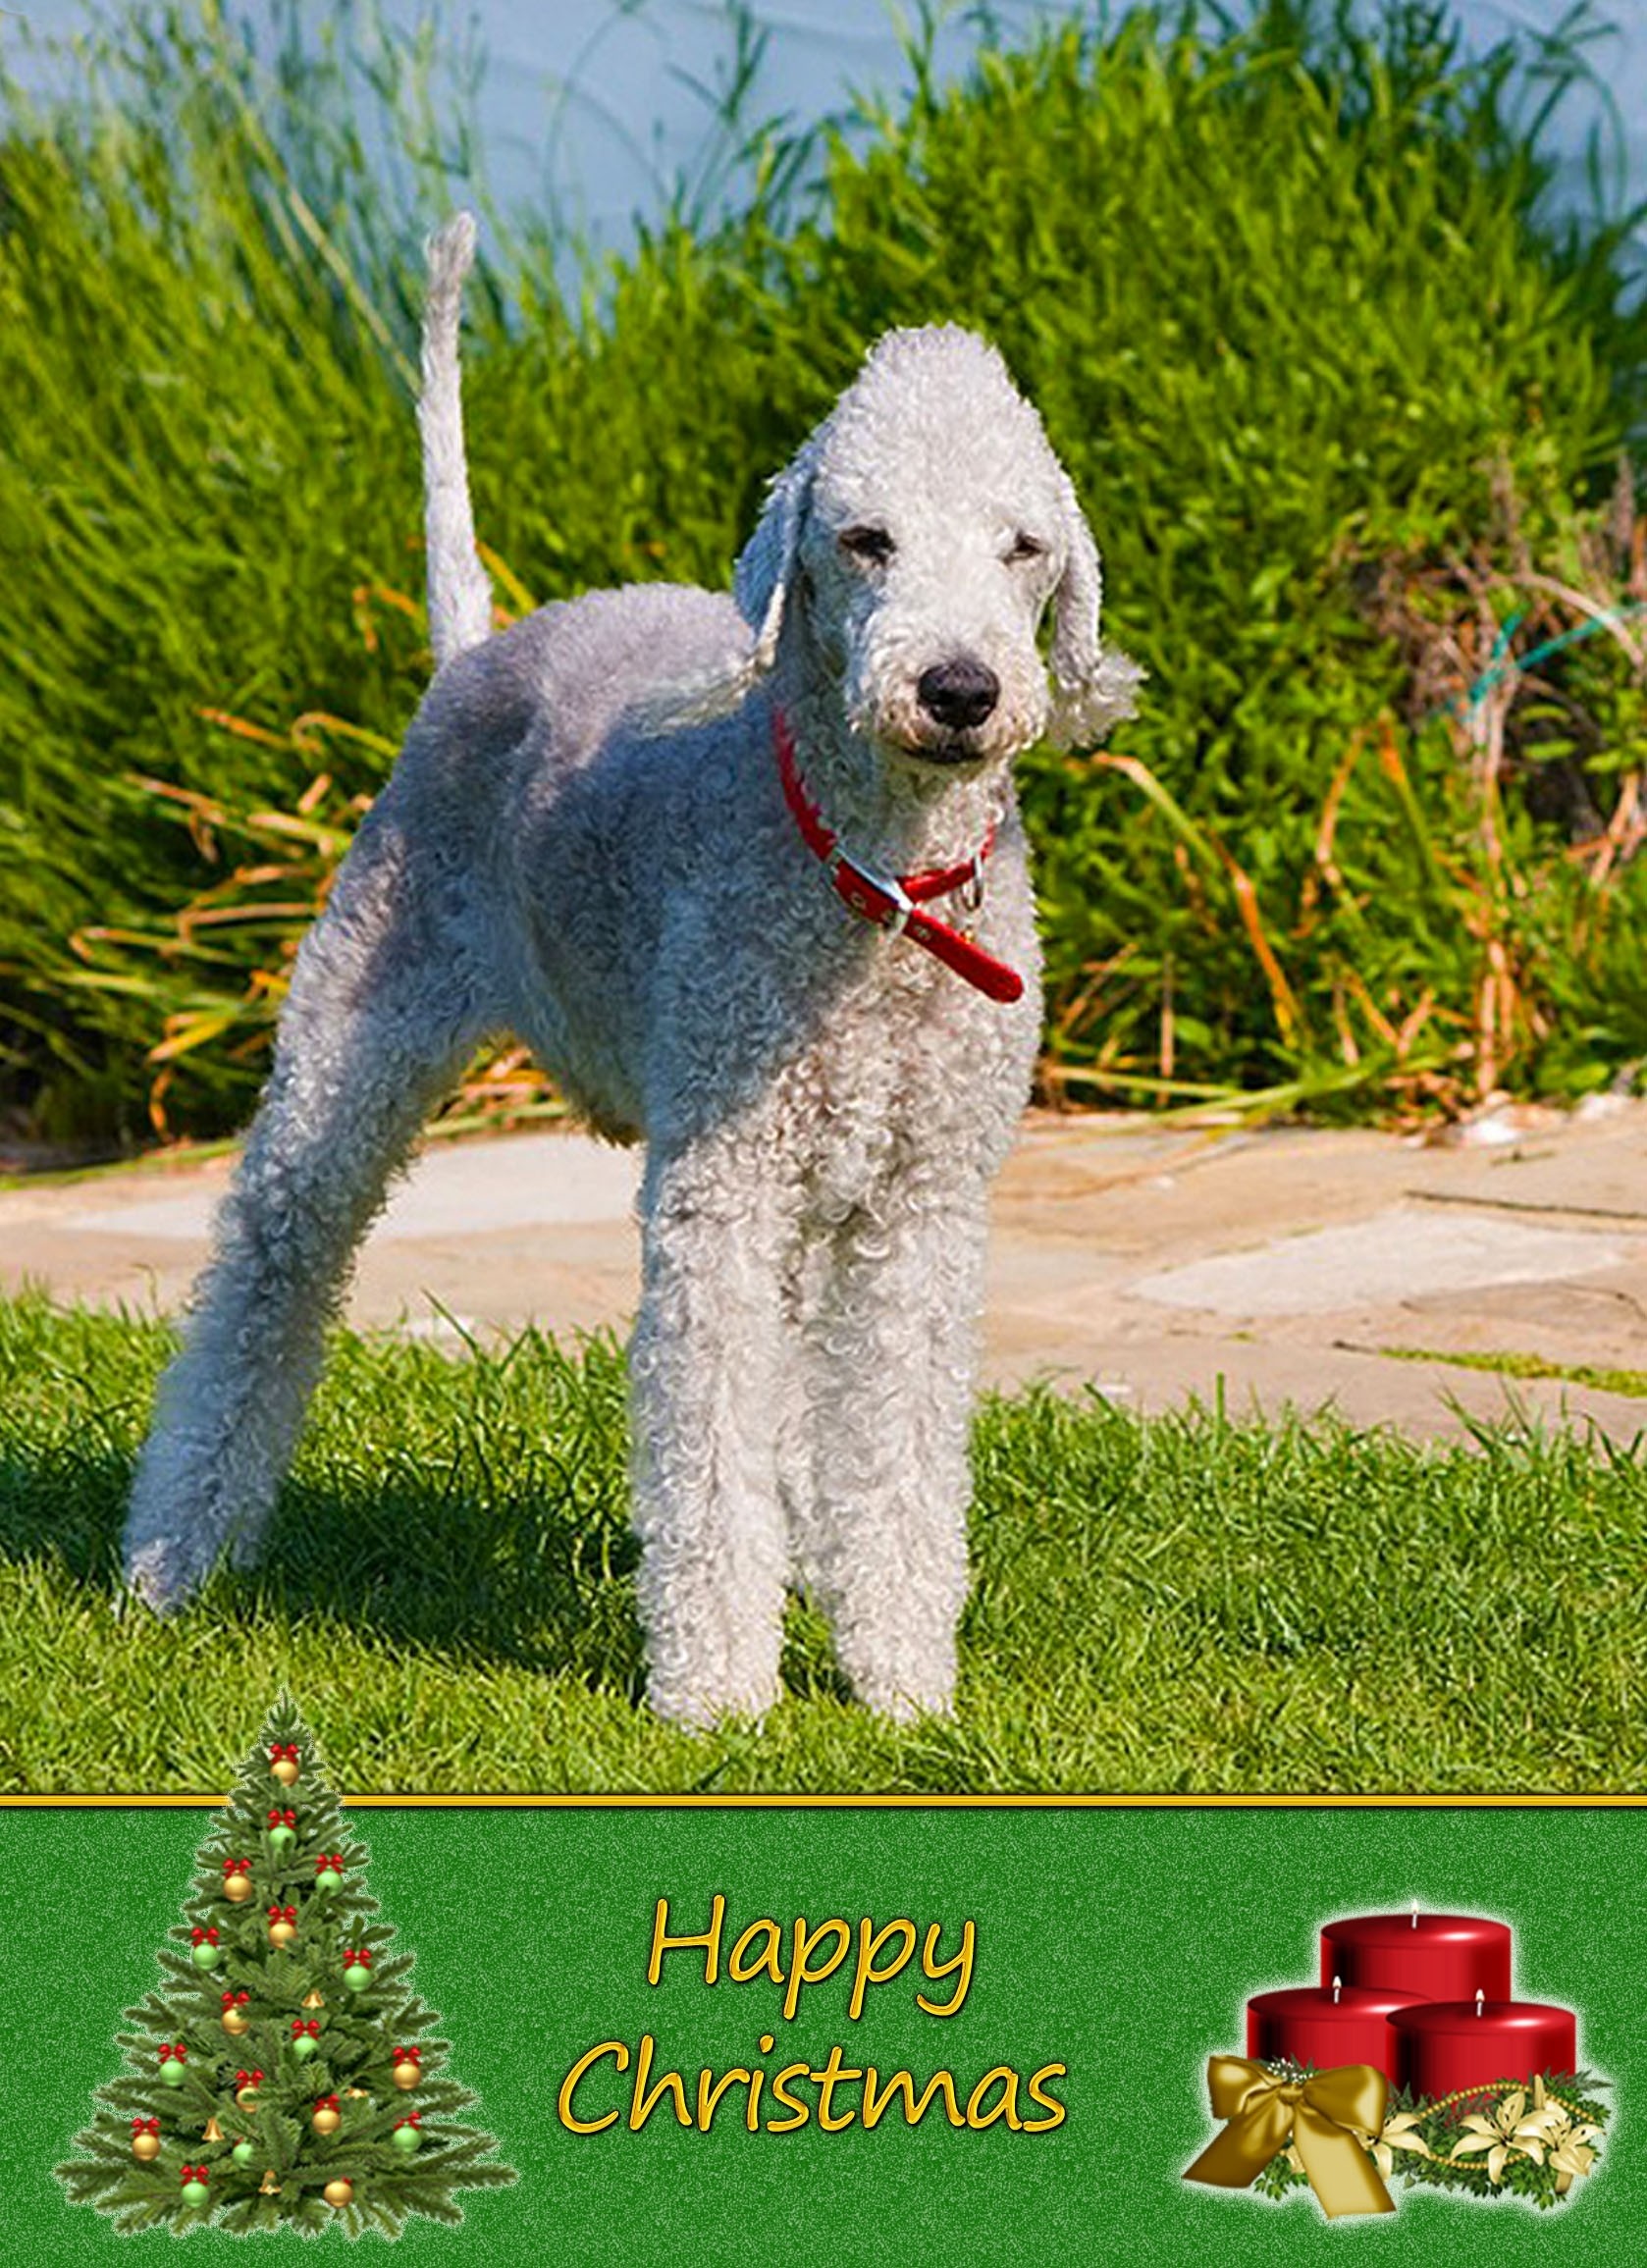 Bedlington Terrier Christmas Card